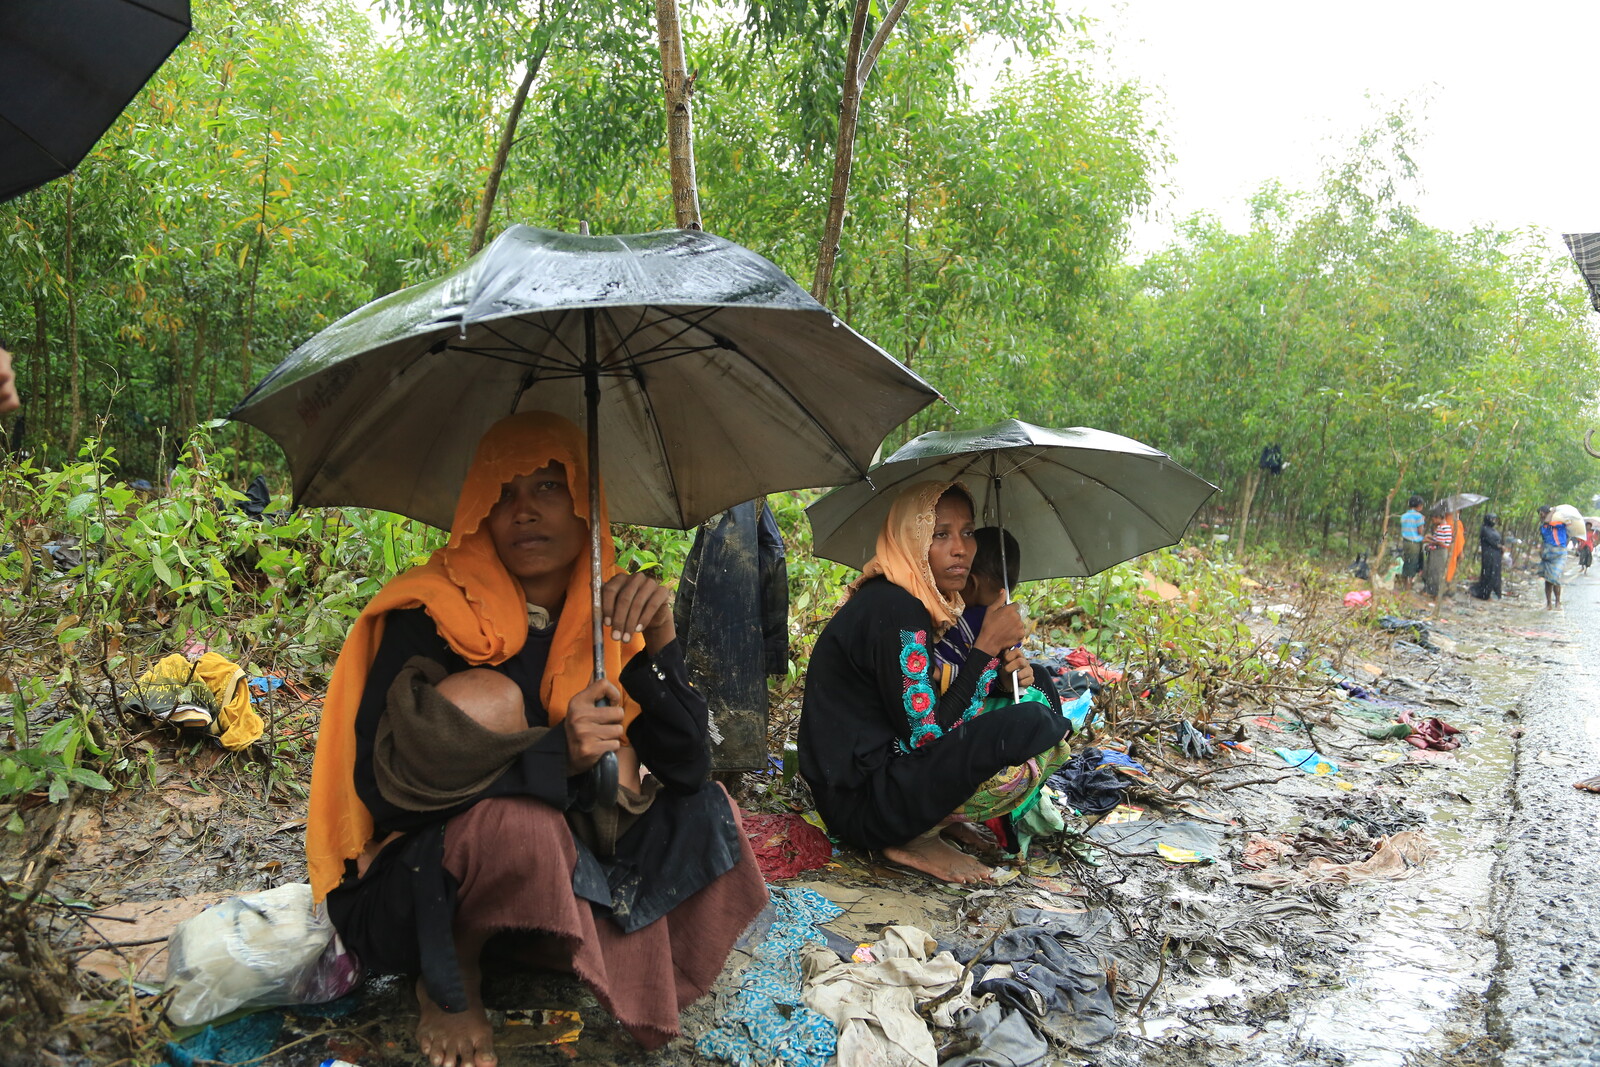 Frauen schützen sich und ihre Kinder mit Regenschirmen vor dem Regen